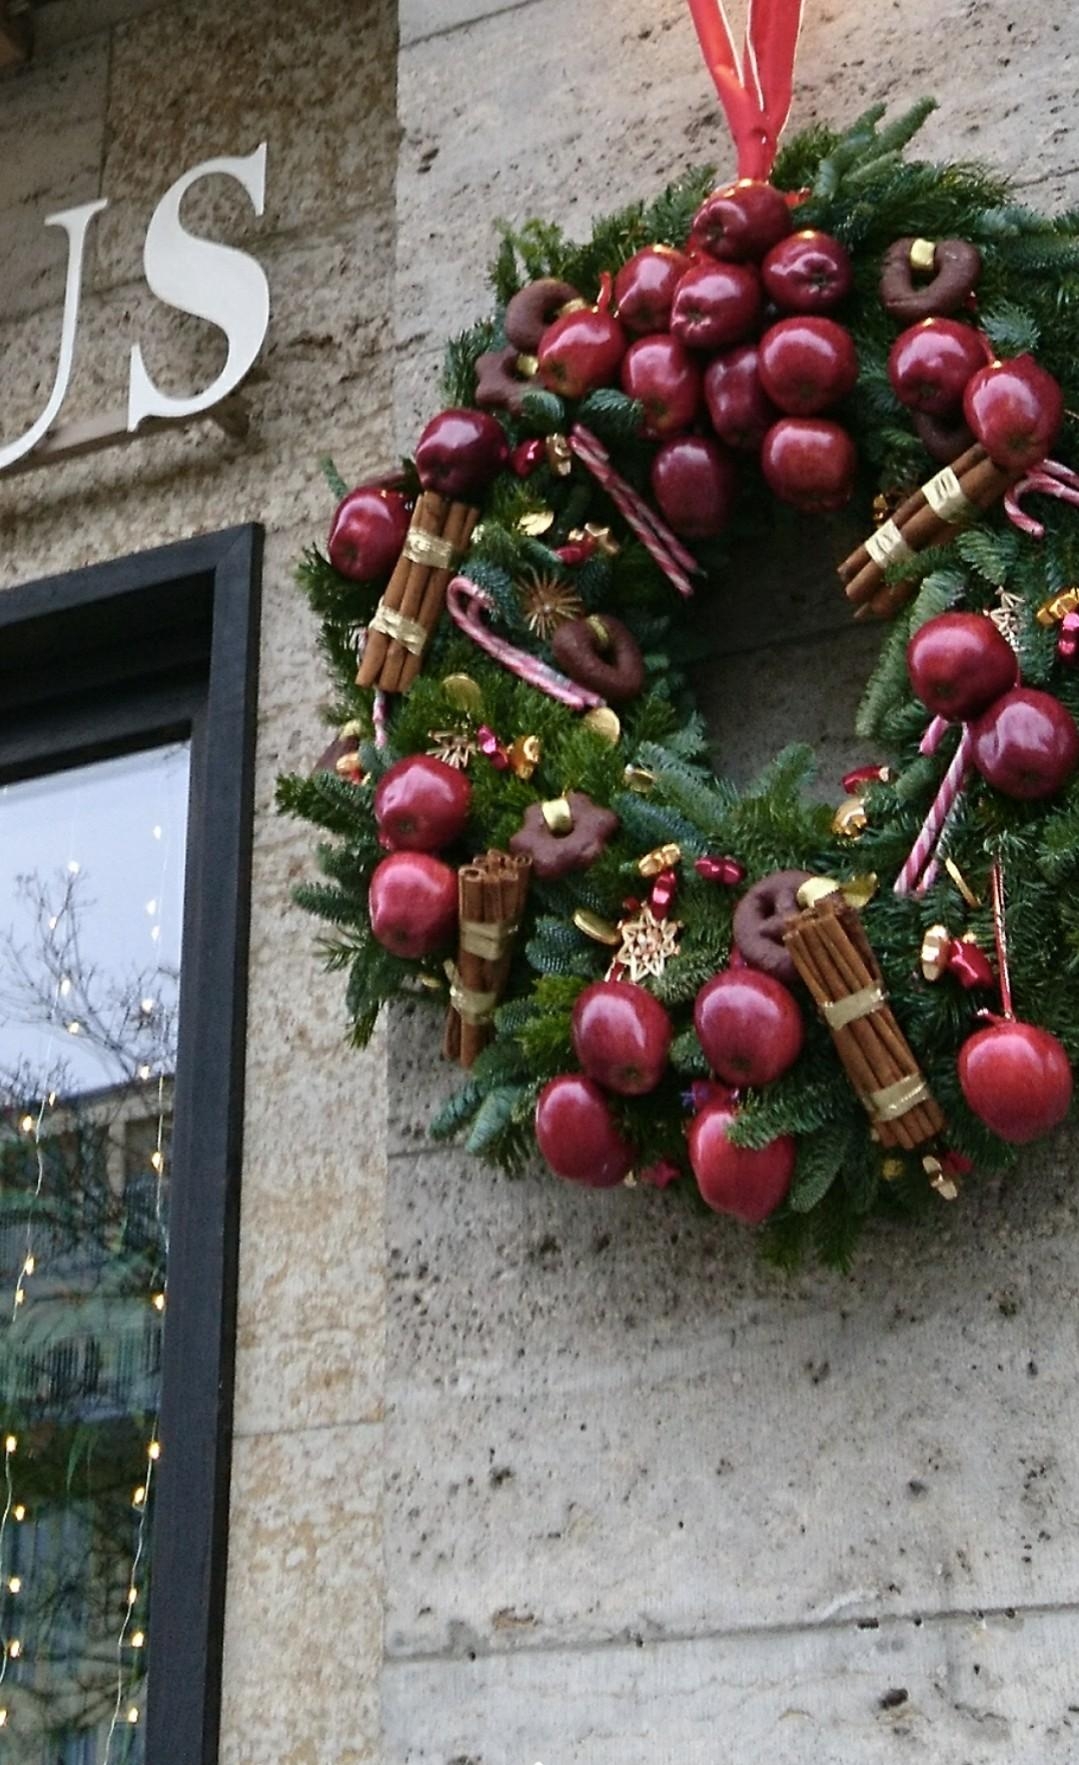 Äpfel, Nuss und Mandelkern essen wir doch alle gern 😊🍎🌰

#Weihnachtsdeko with #FreshFood